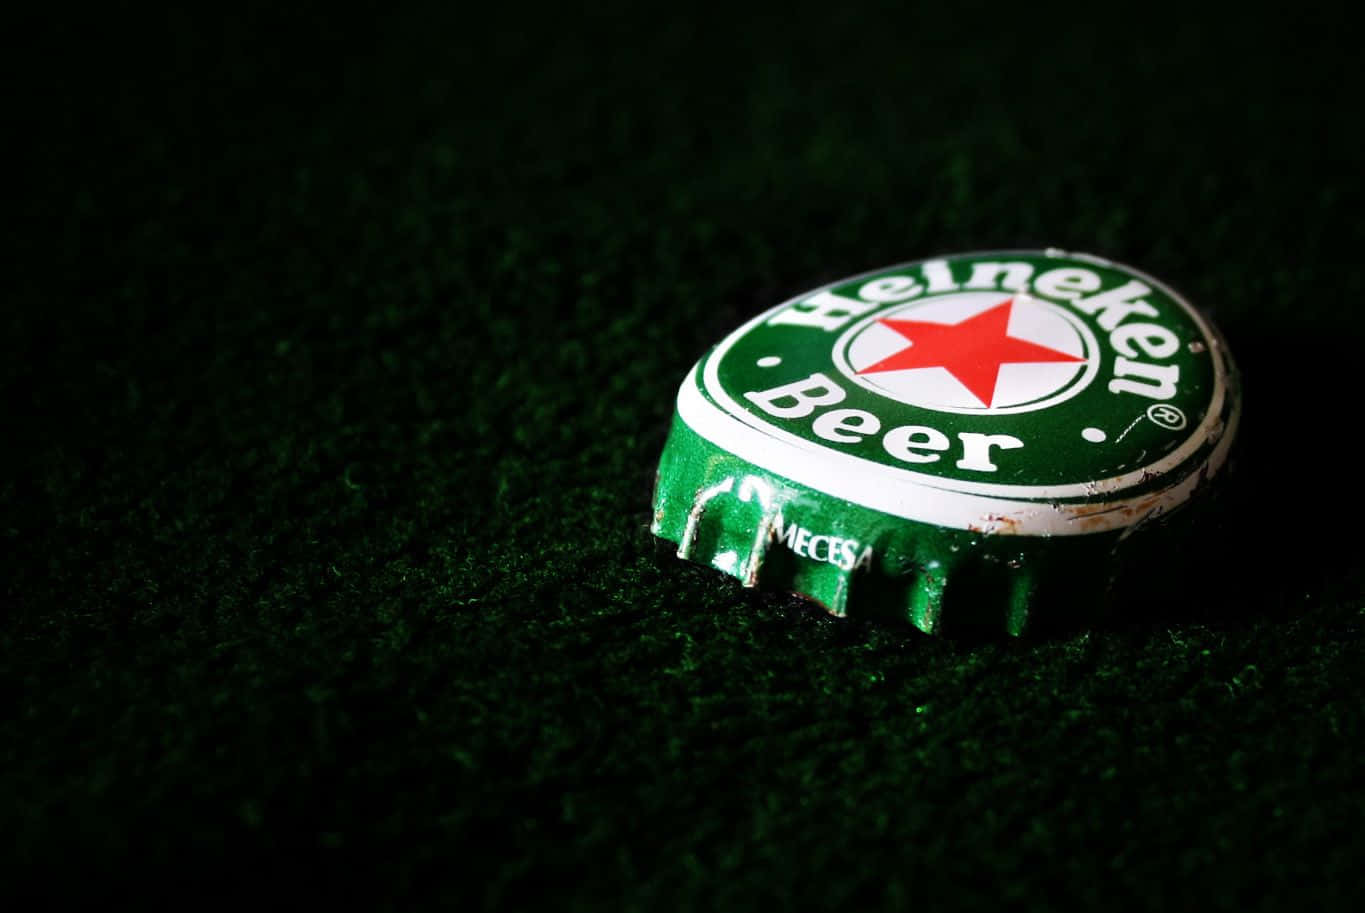 Bottigliee Bicchieri Di Birra Heineken